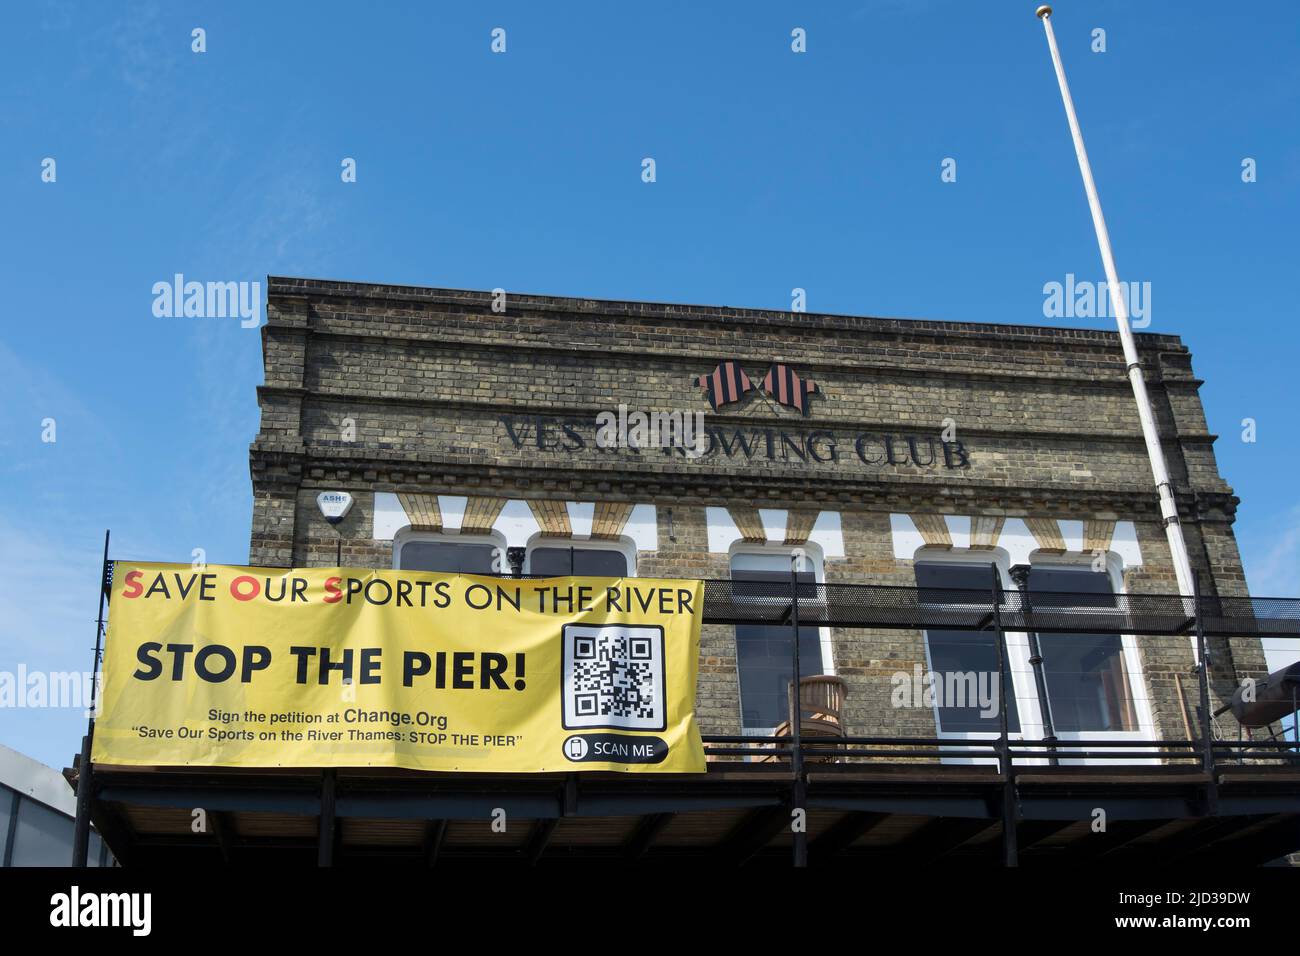 Stoppen Sie das Pier-Banner am vesta Ruderclub in putney, london, england, und stellen Sie sich gegen die geplante Schaffung eines Pier an der themse durch den fc fulham ein. Stockfoto